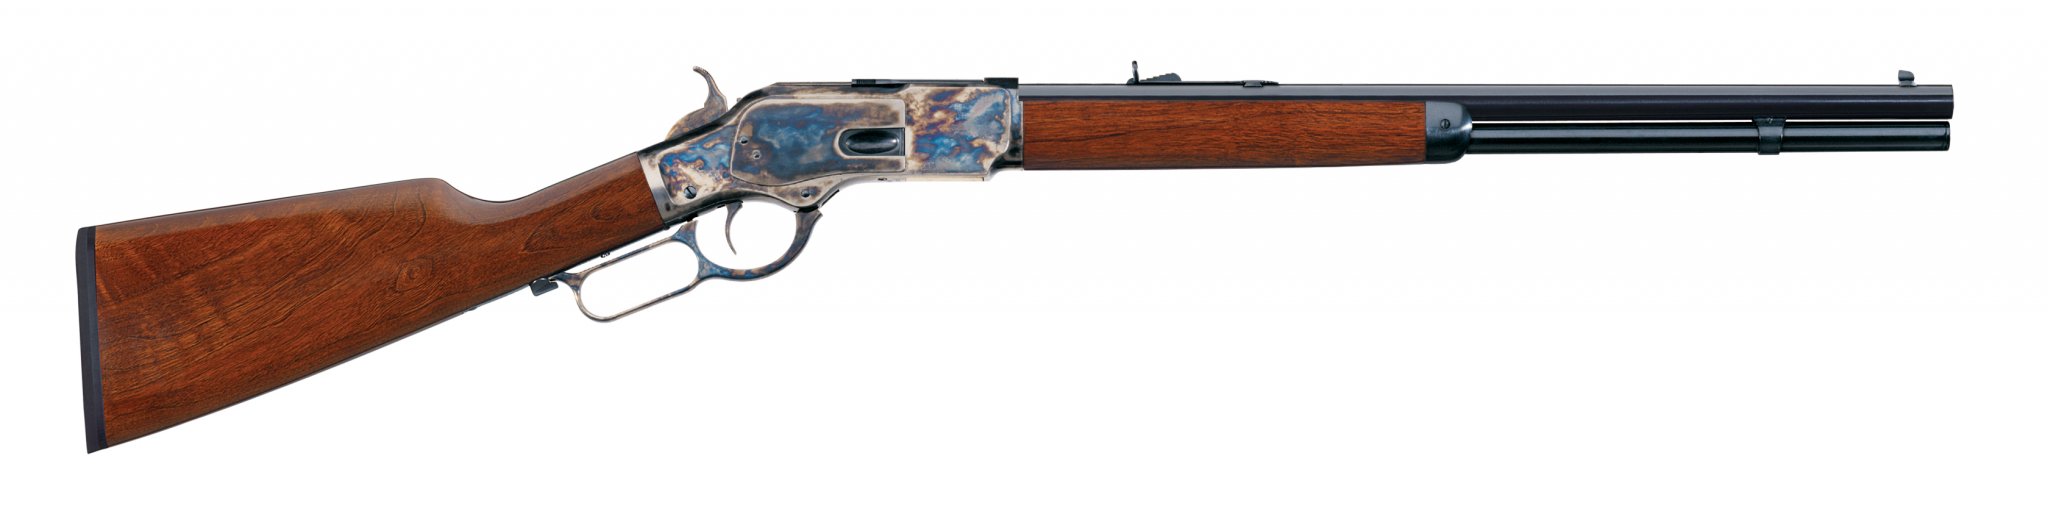 Uberti-1873-Rifle (1).jpg